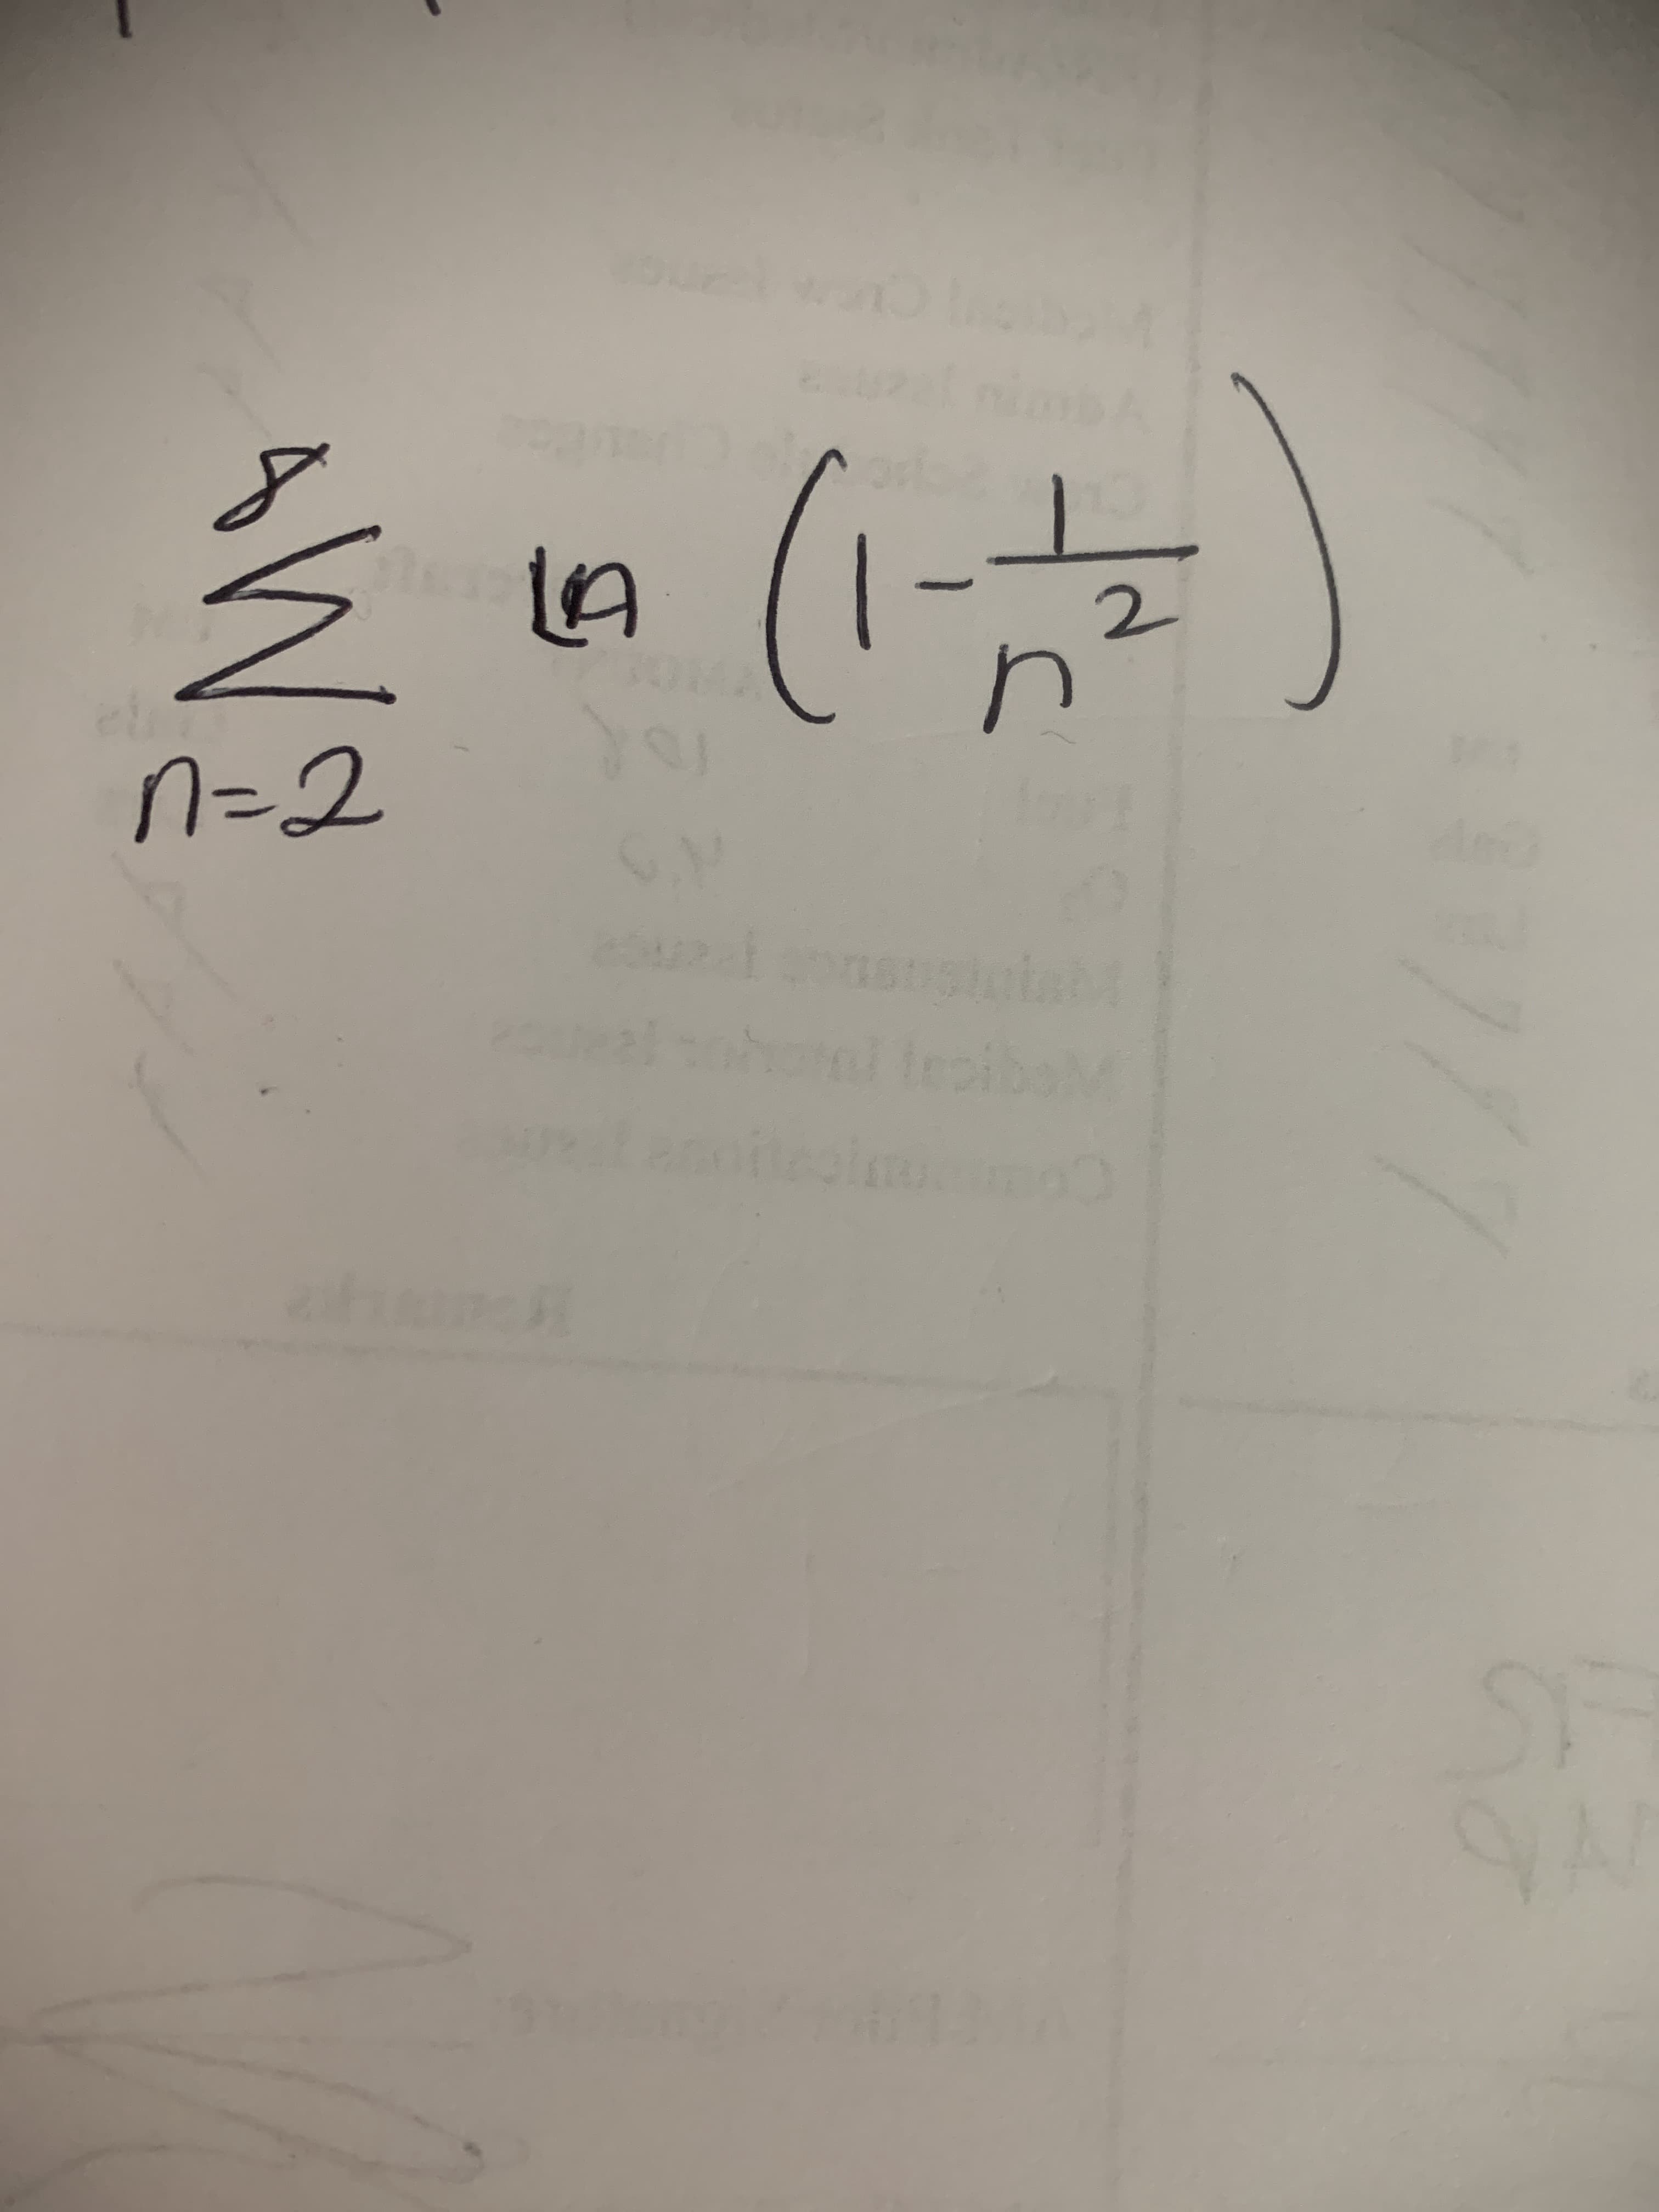 (1)
n=2
